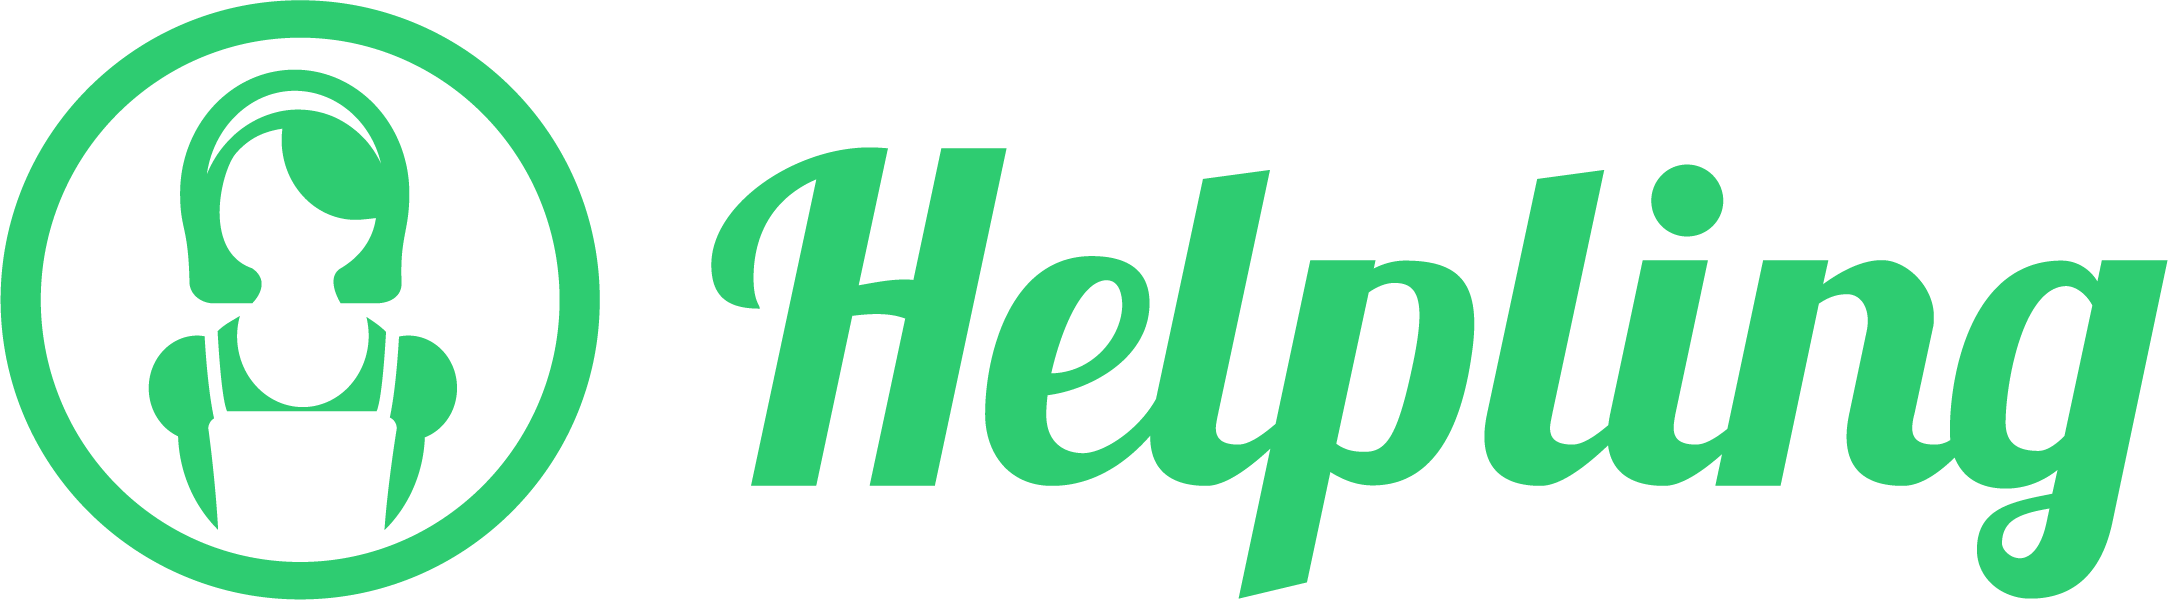 Logo_Helpling_RGB_Horizontal